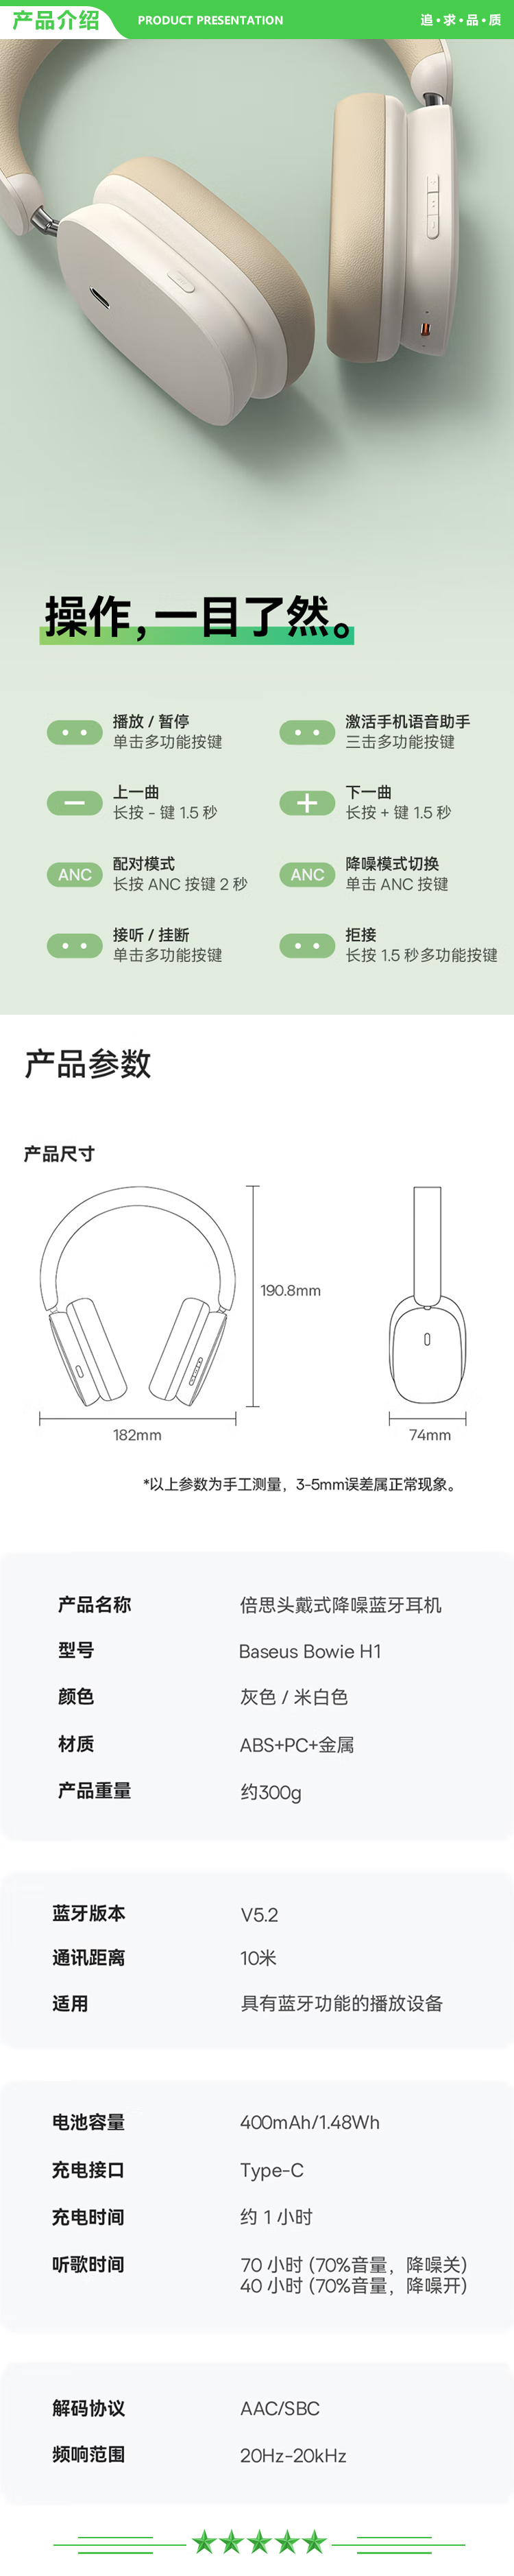 倍思 Baseus H1 米白色 耳机头戴式蓝牙耳机40dB降噪无线音乐70h长续航重低音.jpg